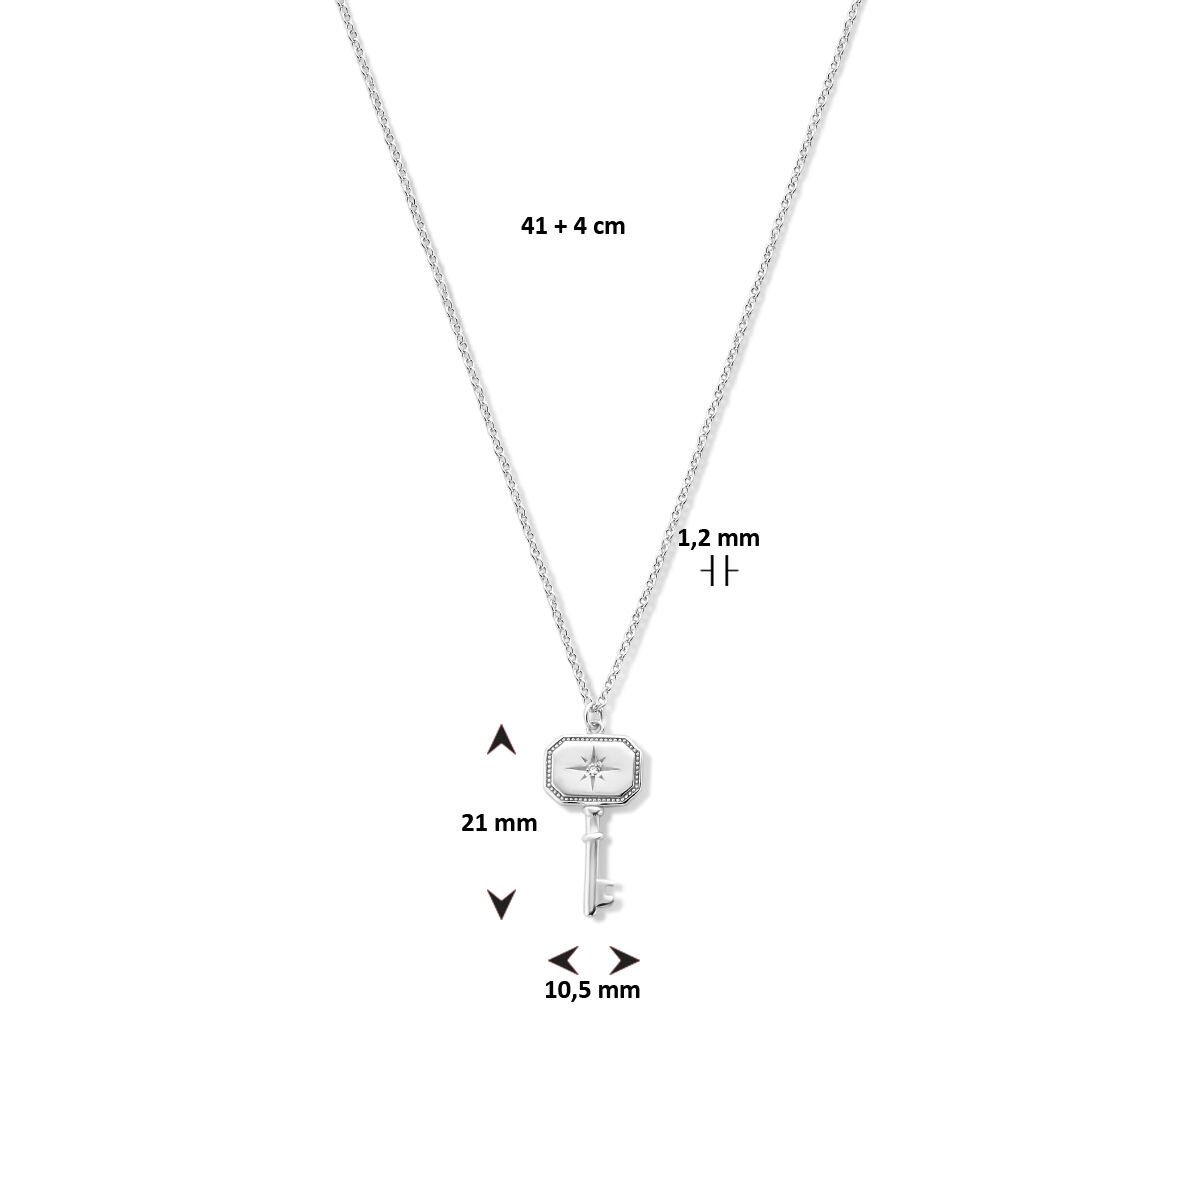 Cataleya Jewels Collier Sleutel 1,2 mm 41 + 4 cm Zilver